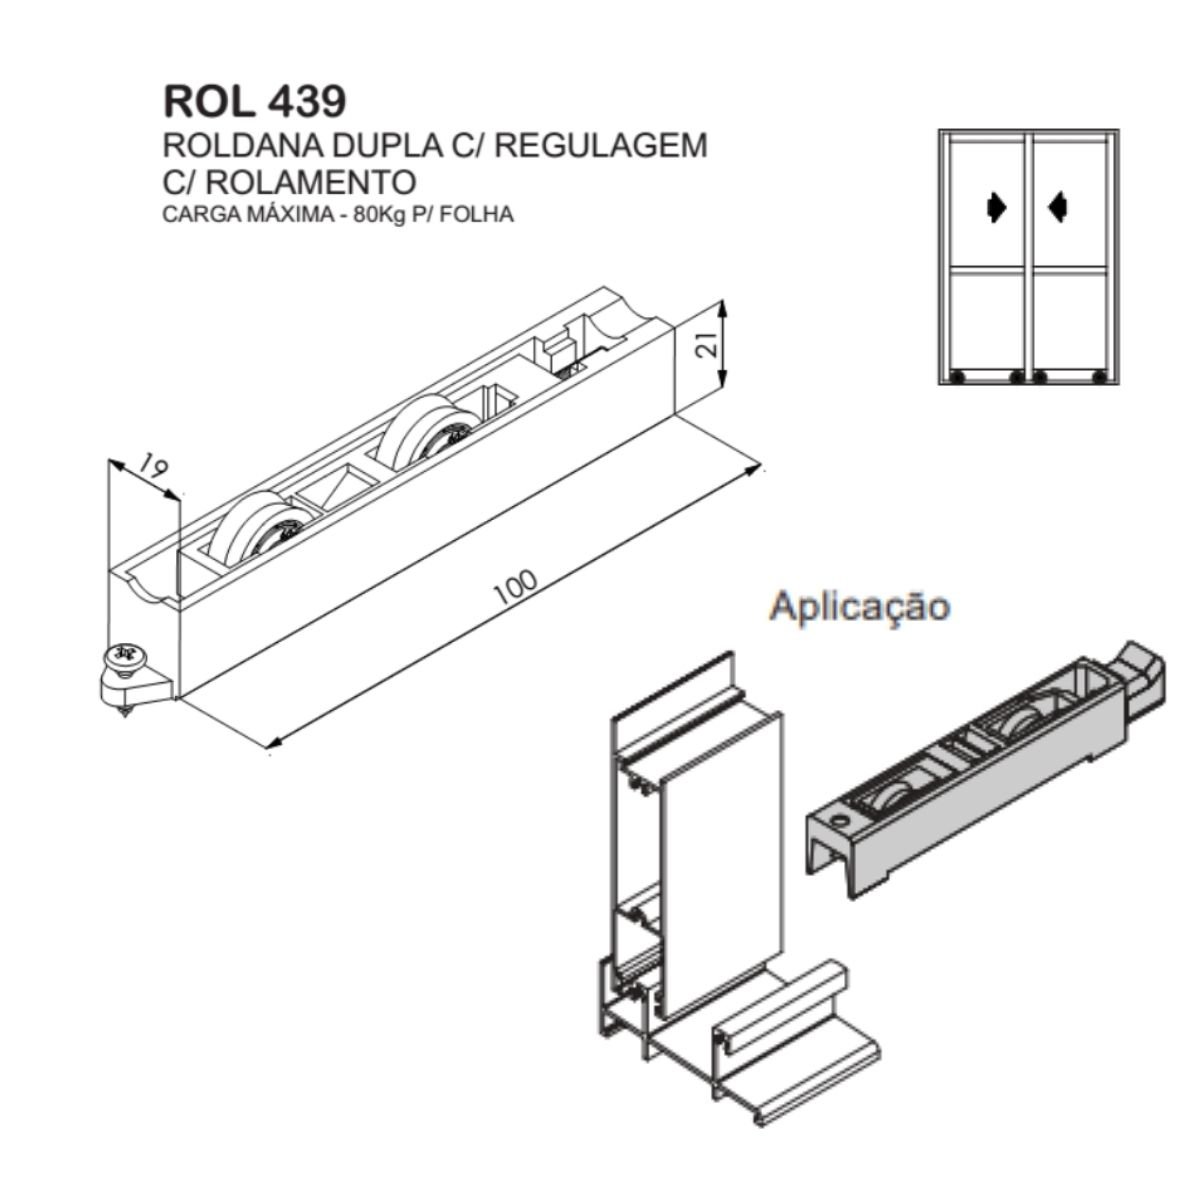 ROL 439 - Roldana dupla com regulagem para janela e porta de correr de alumínio Suprema - 5